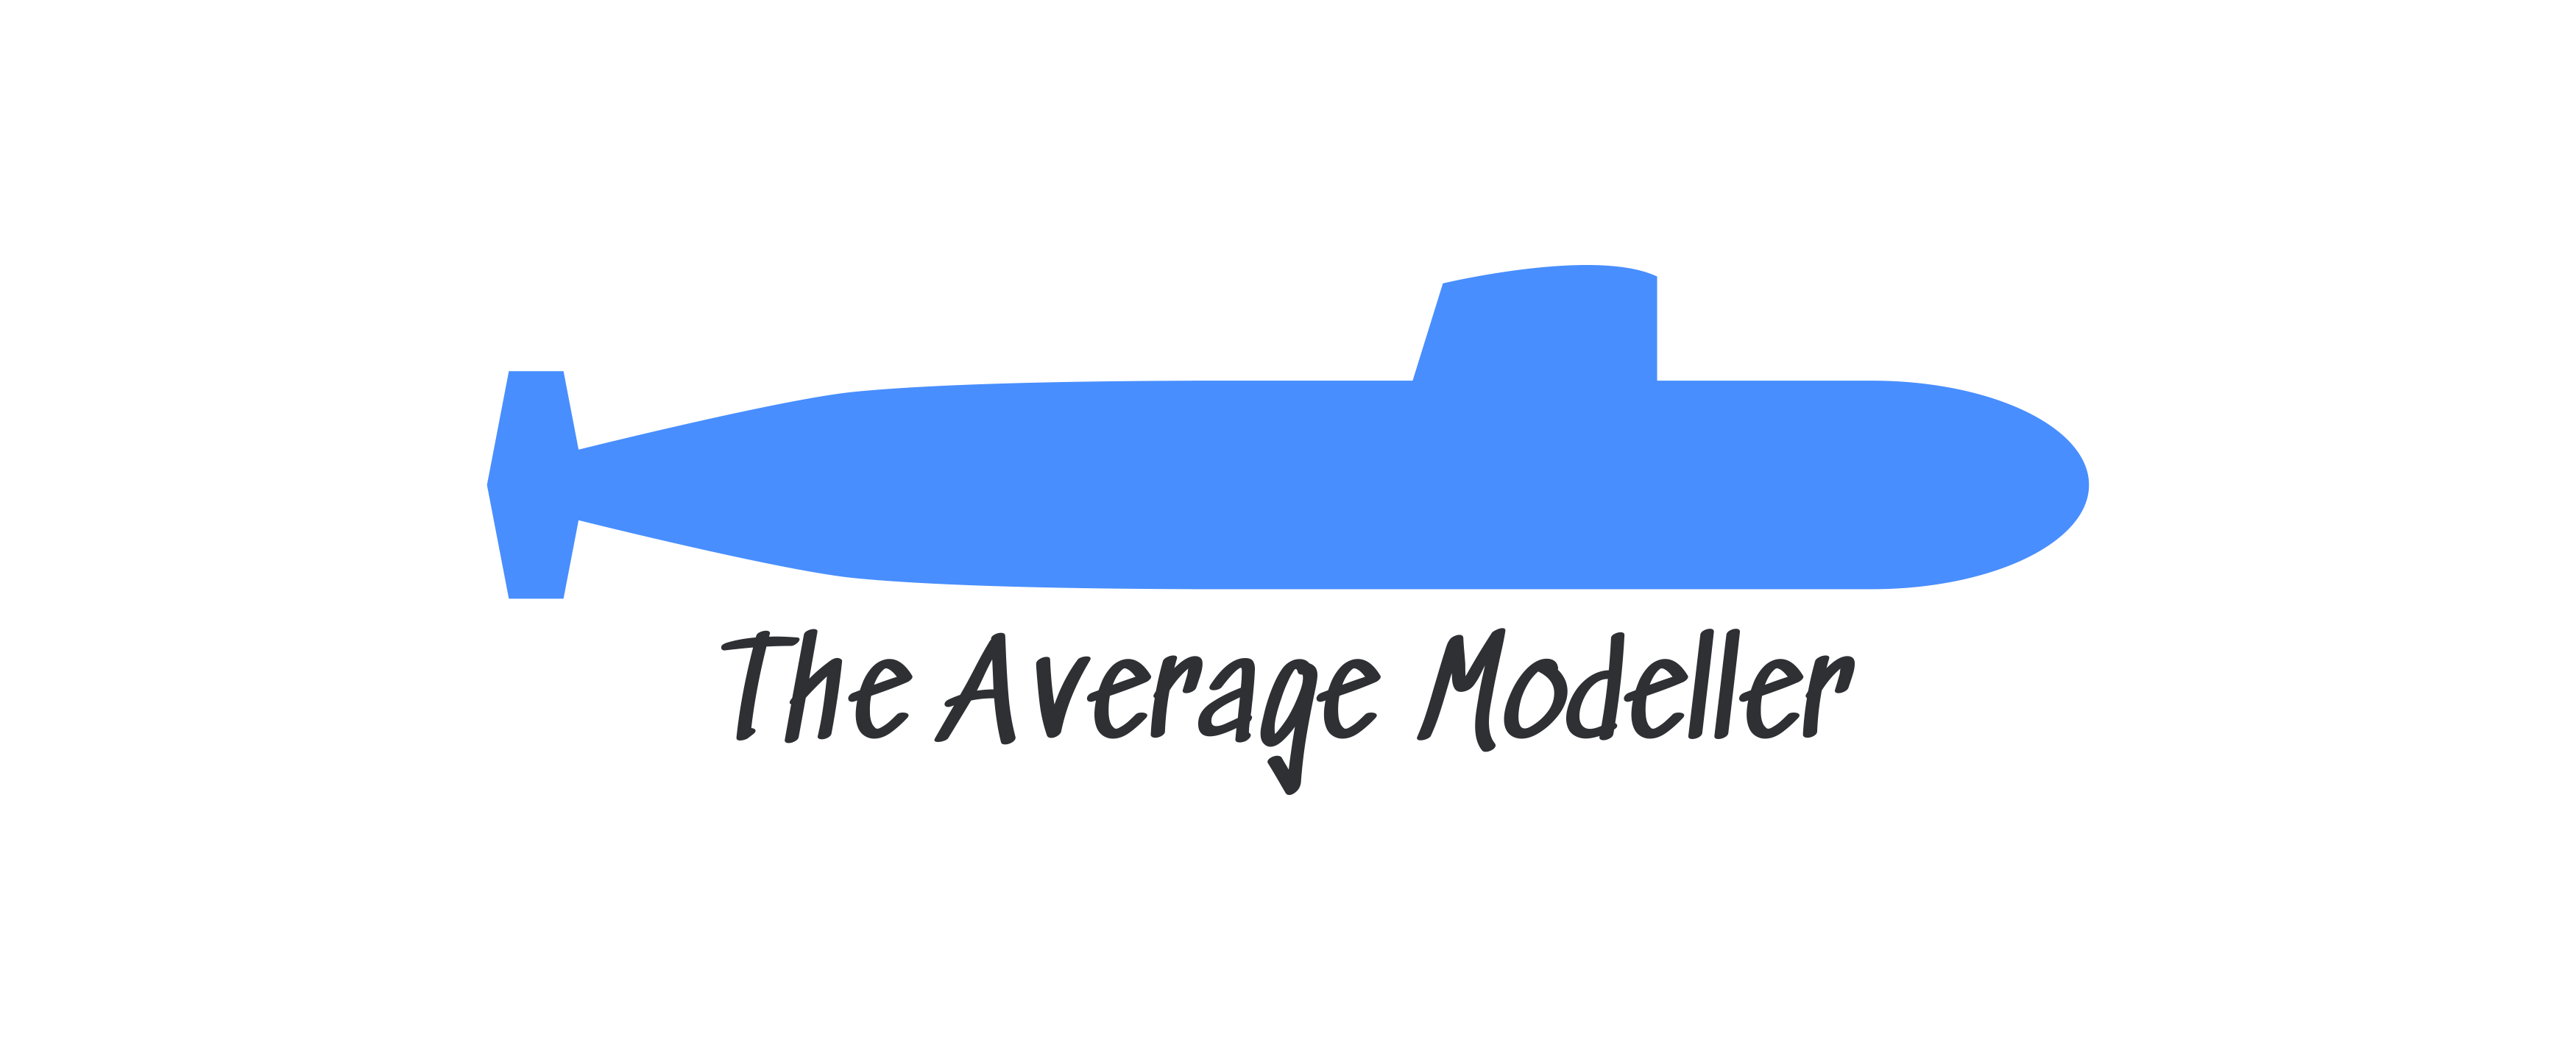 The Average Modeller